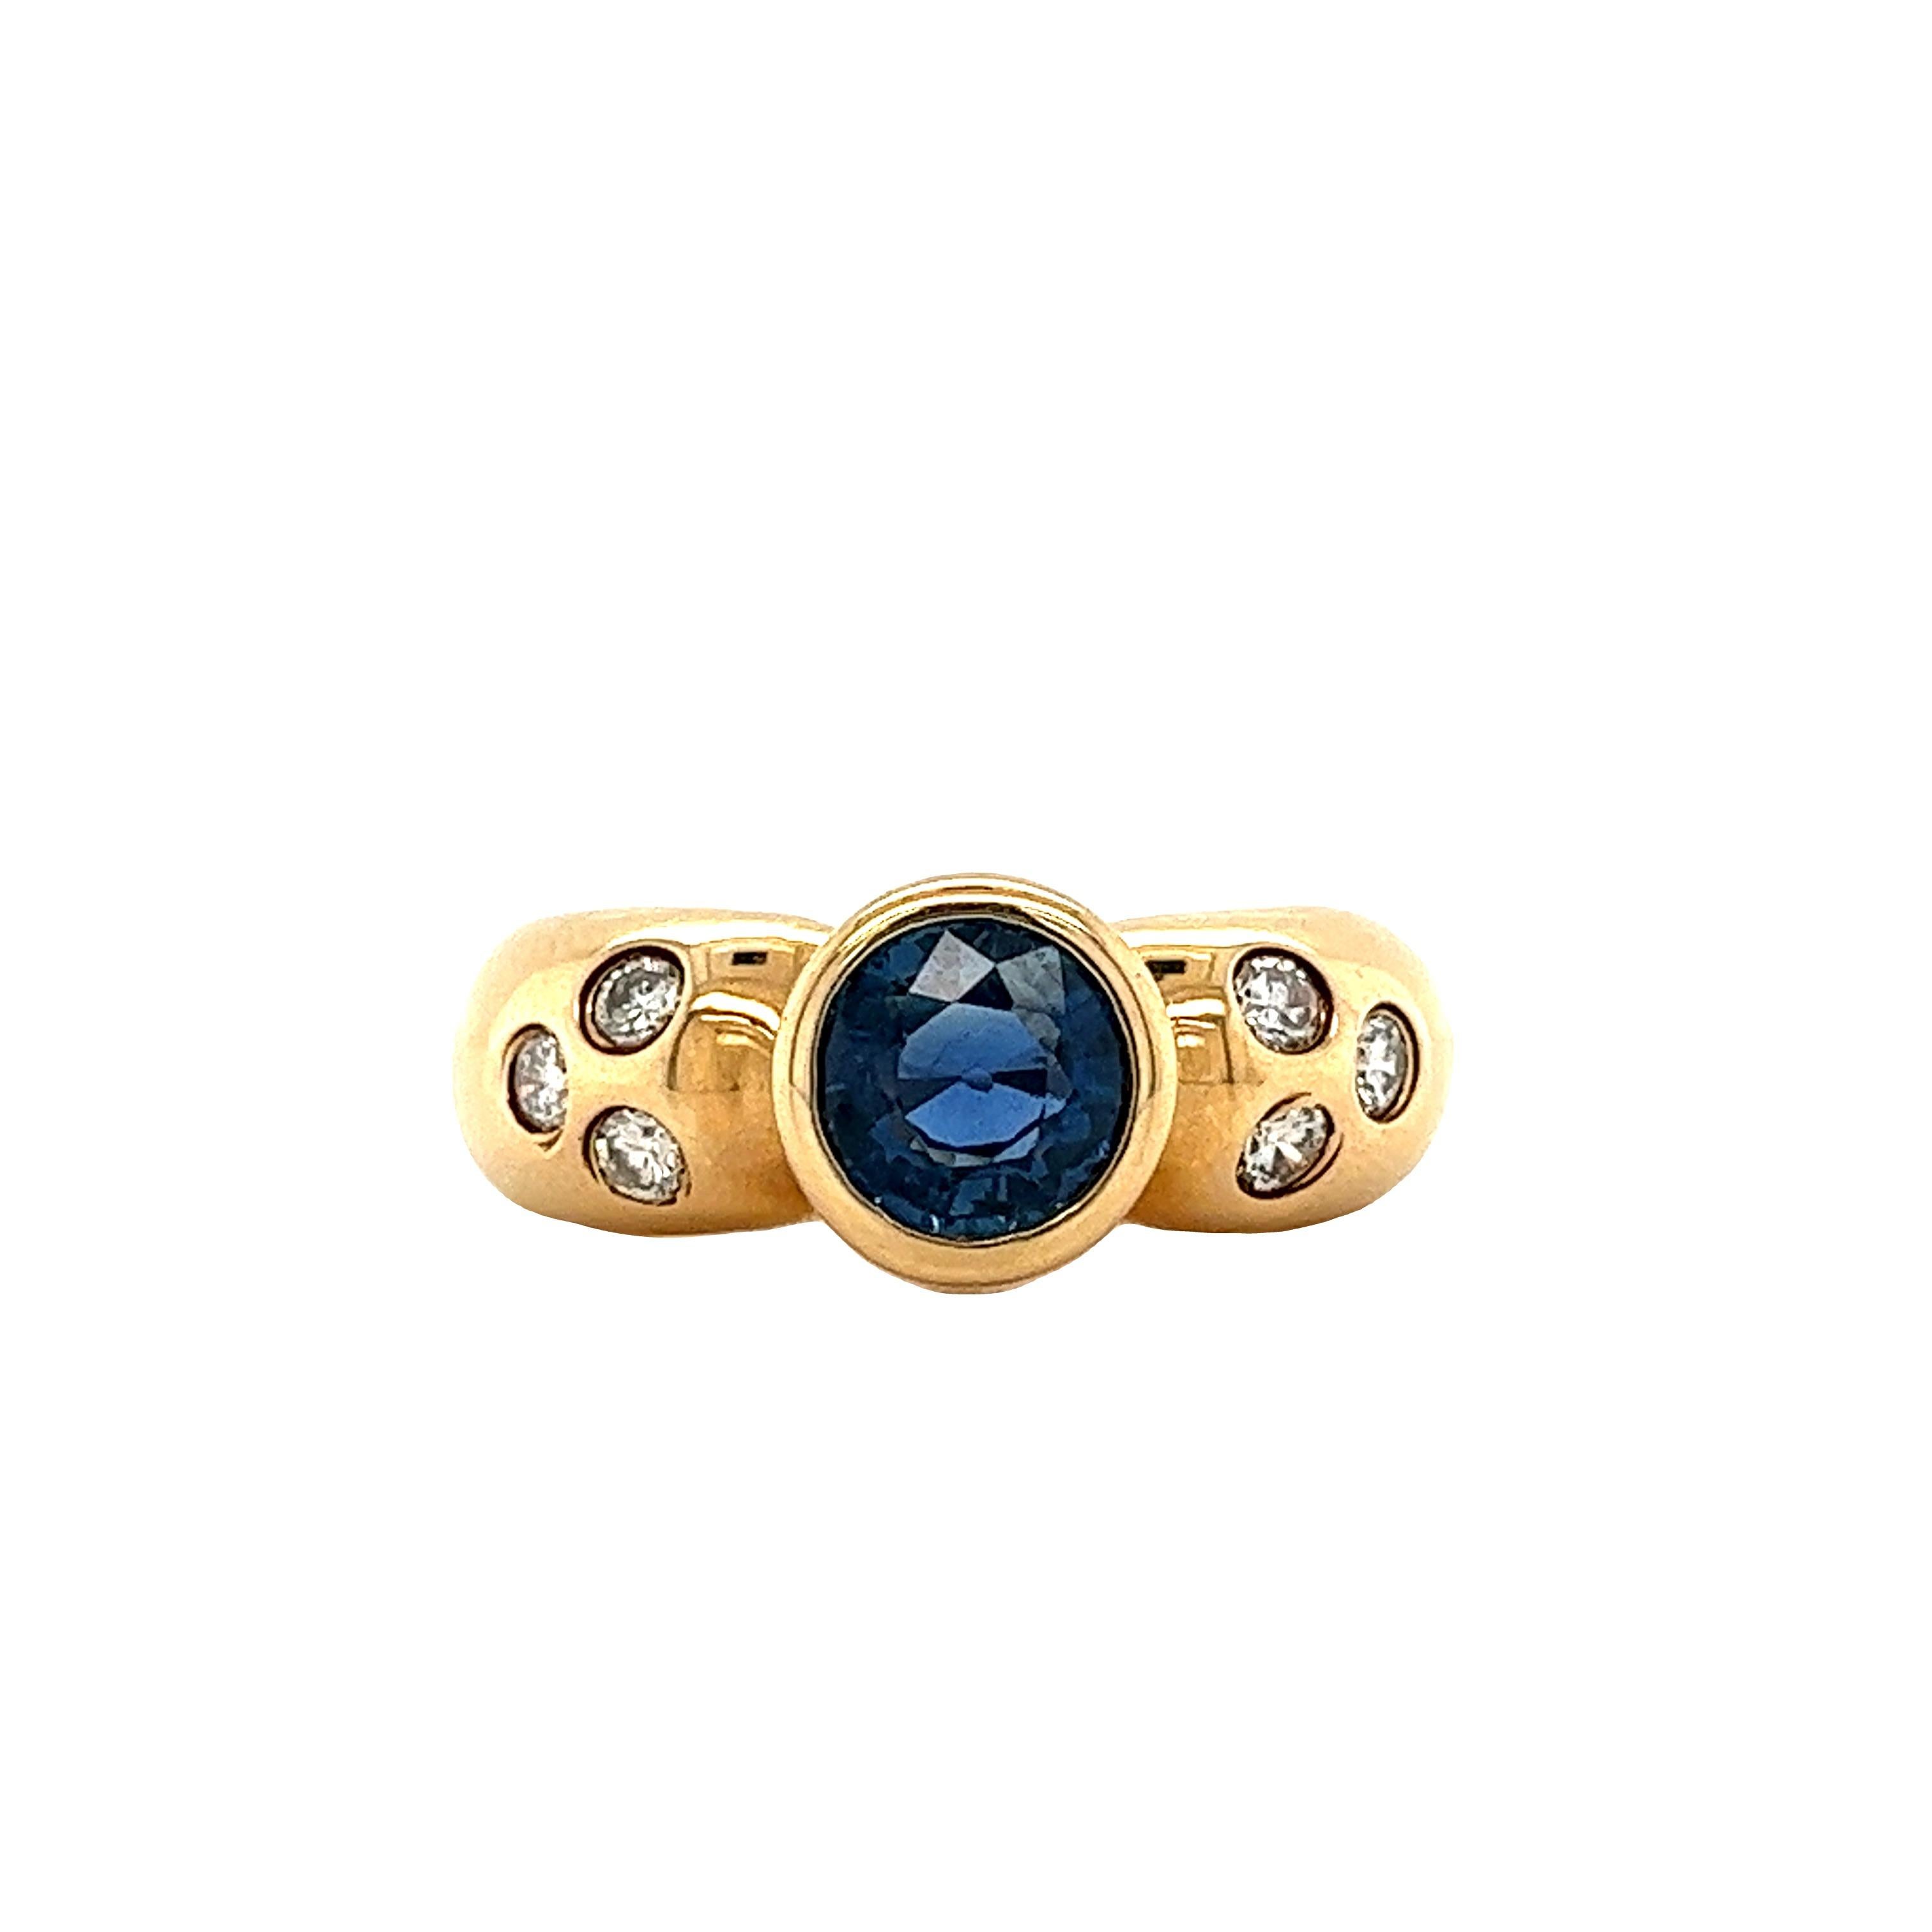 Saphir bleu naturel de 1,08 carat, de taille ronde, serti de 0,12 carat de diamants naturels de taille ronde. Le saphir bleu est monté sur une monture en or jaune 14k avec des diamants sertis sur la lunette. Le sertissage de la lunette offre un